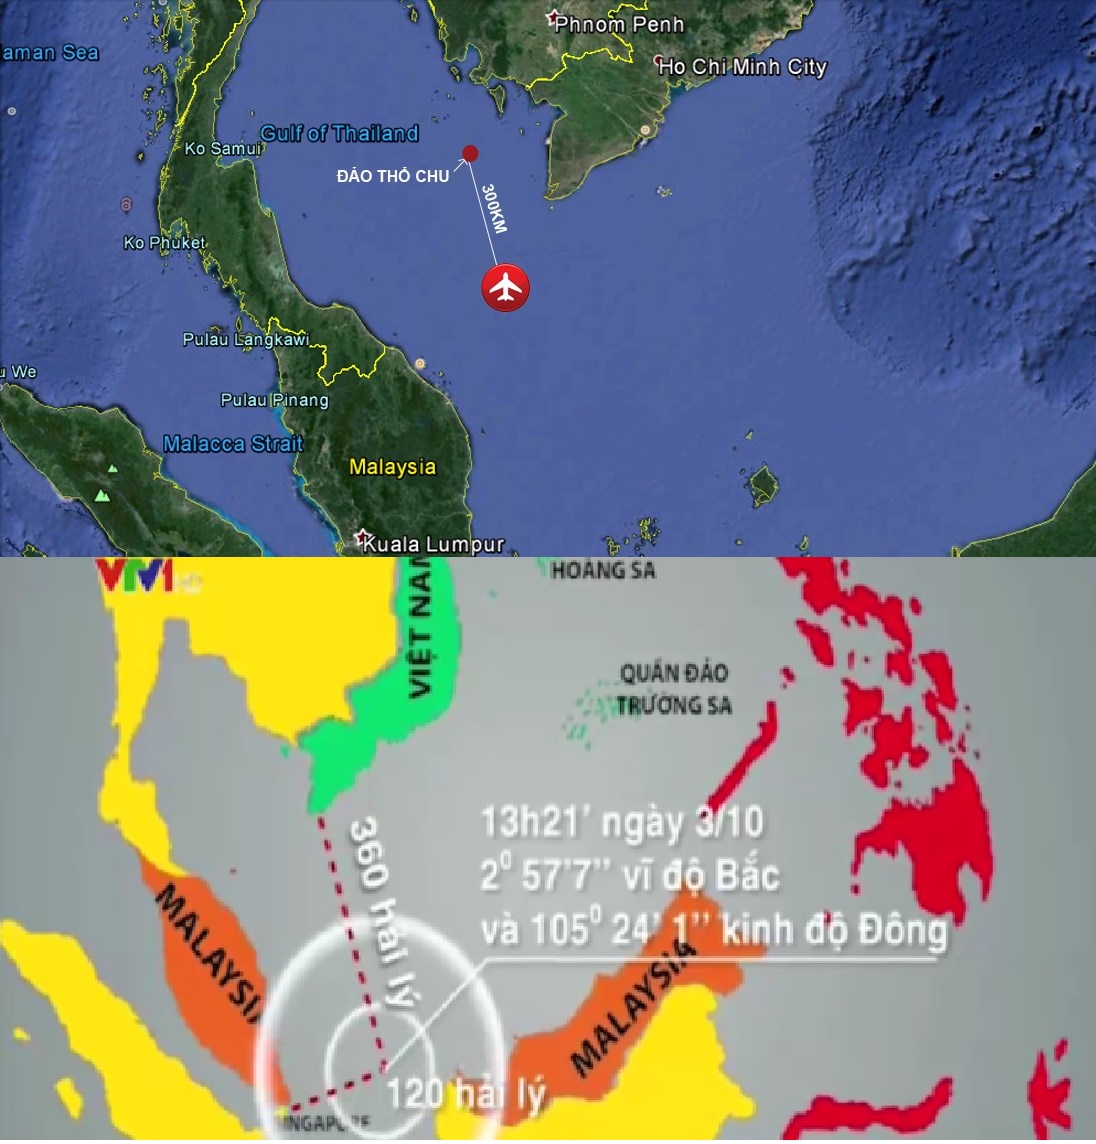 Địa điểm máy bay MH370 của Malaysia gặp nạn và tàu Sunrise 689 mất liên lạc. Ảnh minh họa